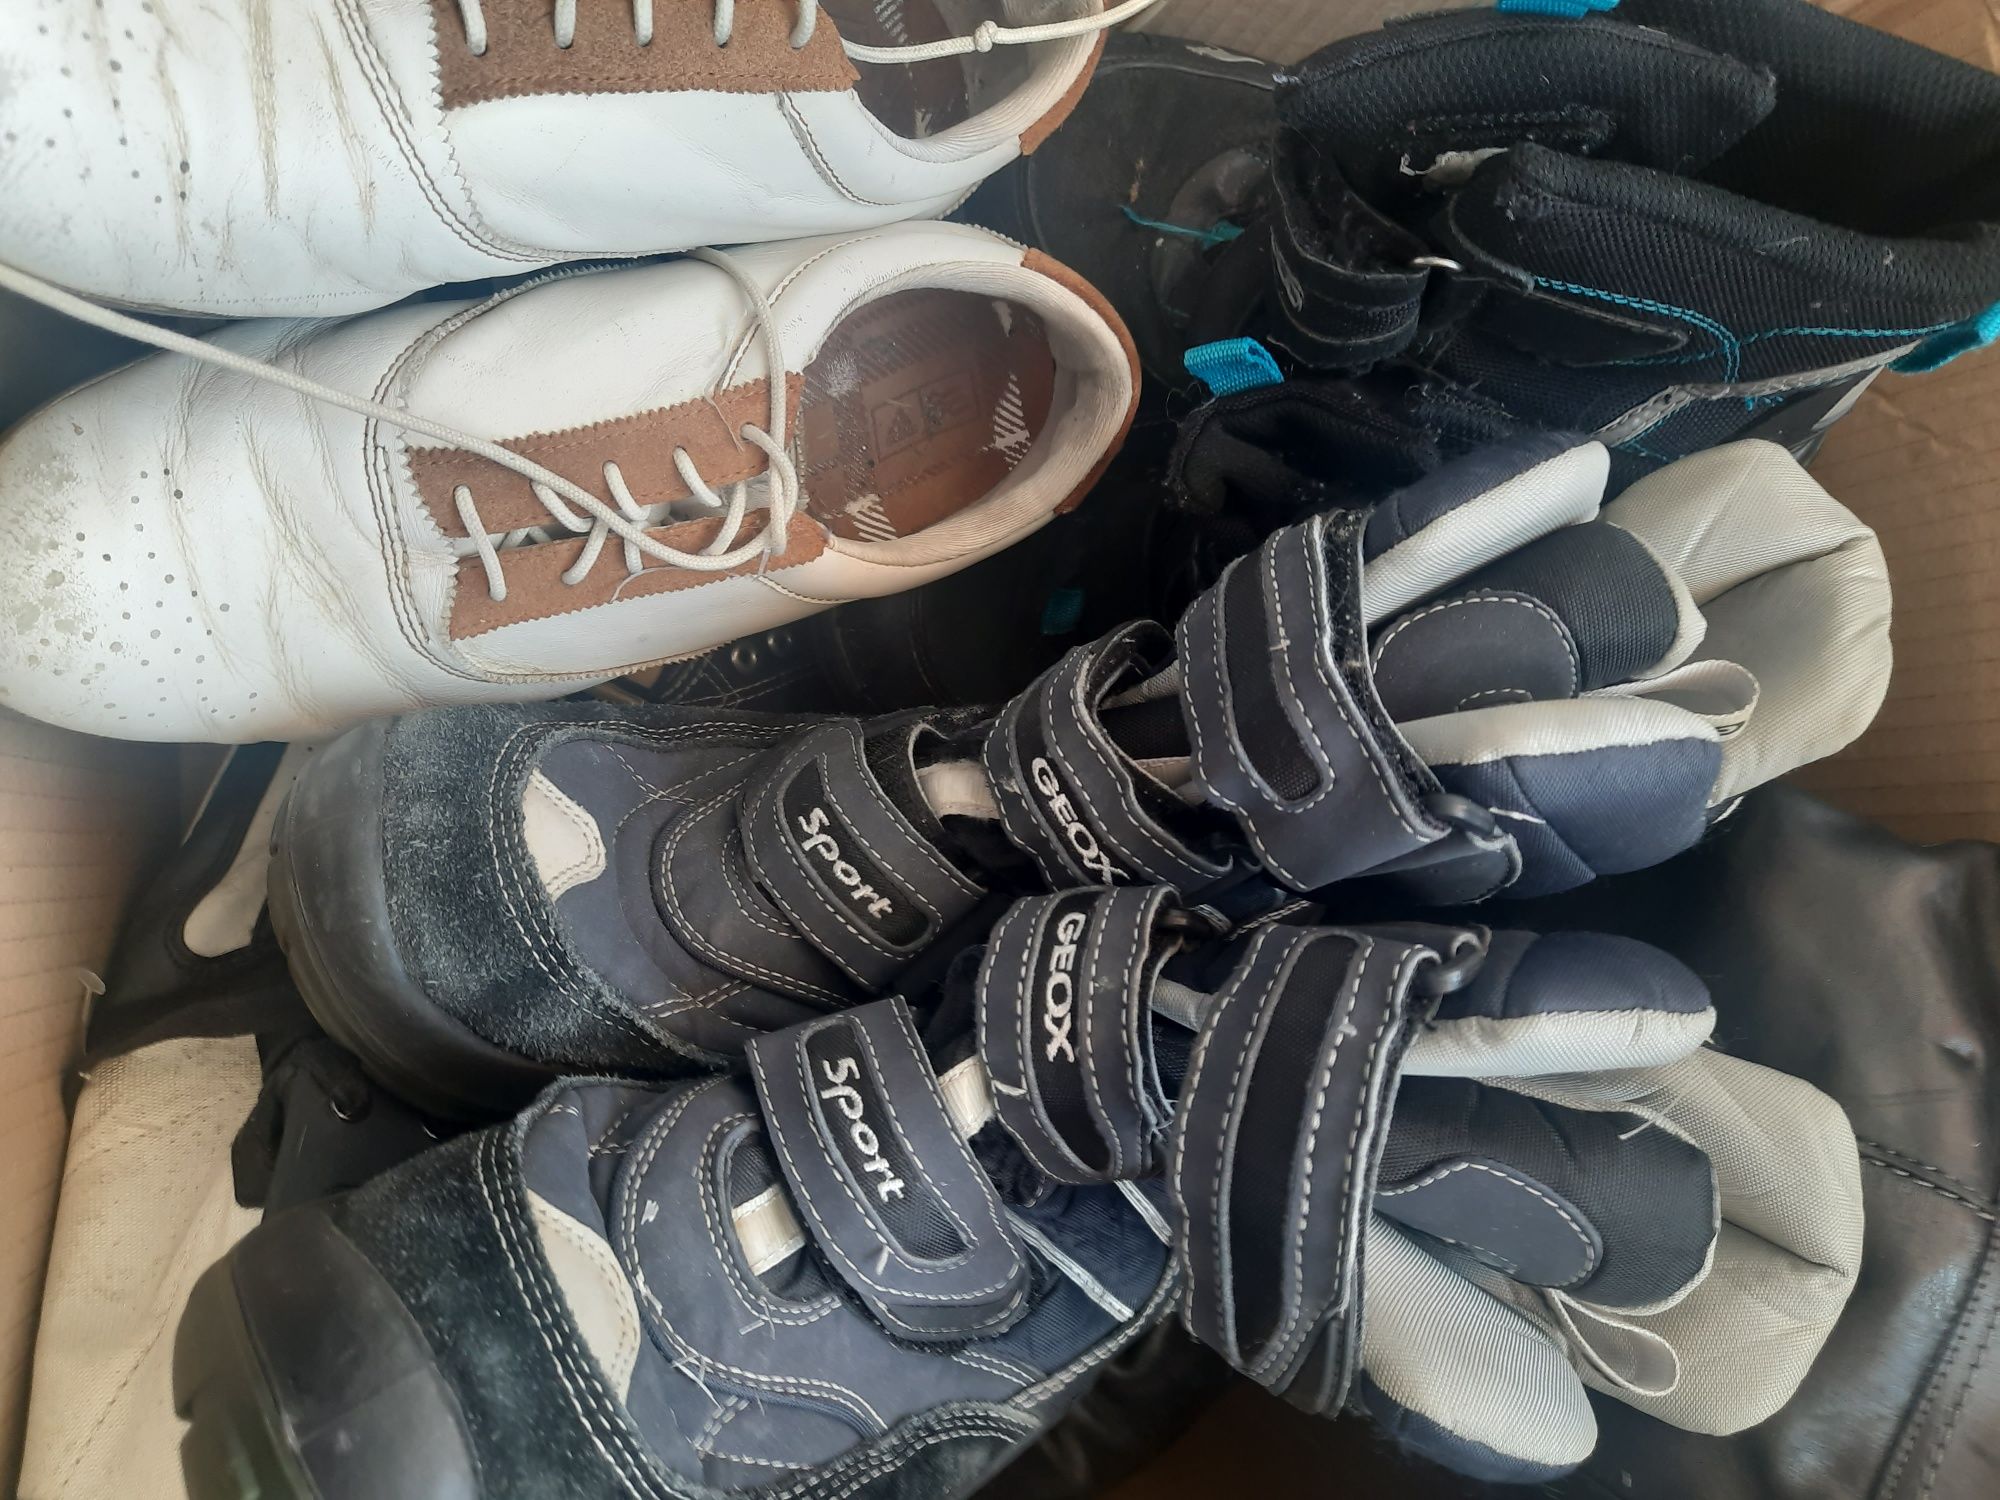 Lichidare stoc încălțăminte :cizme piele,ghete,tenisi, toatā cutia 200